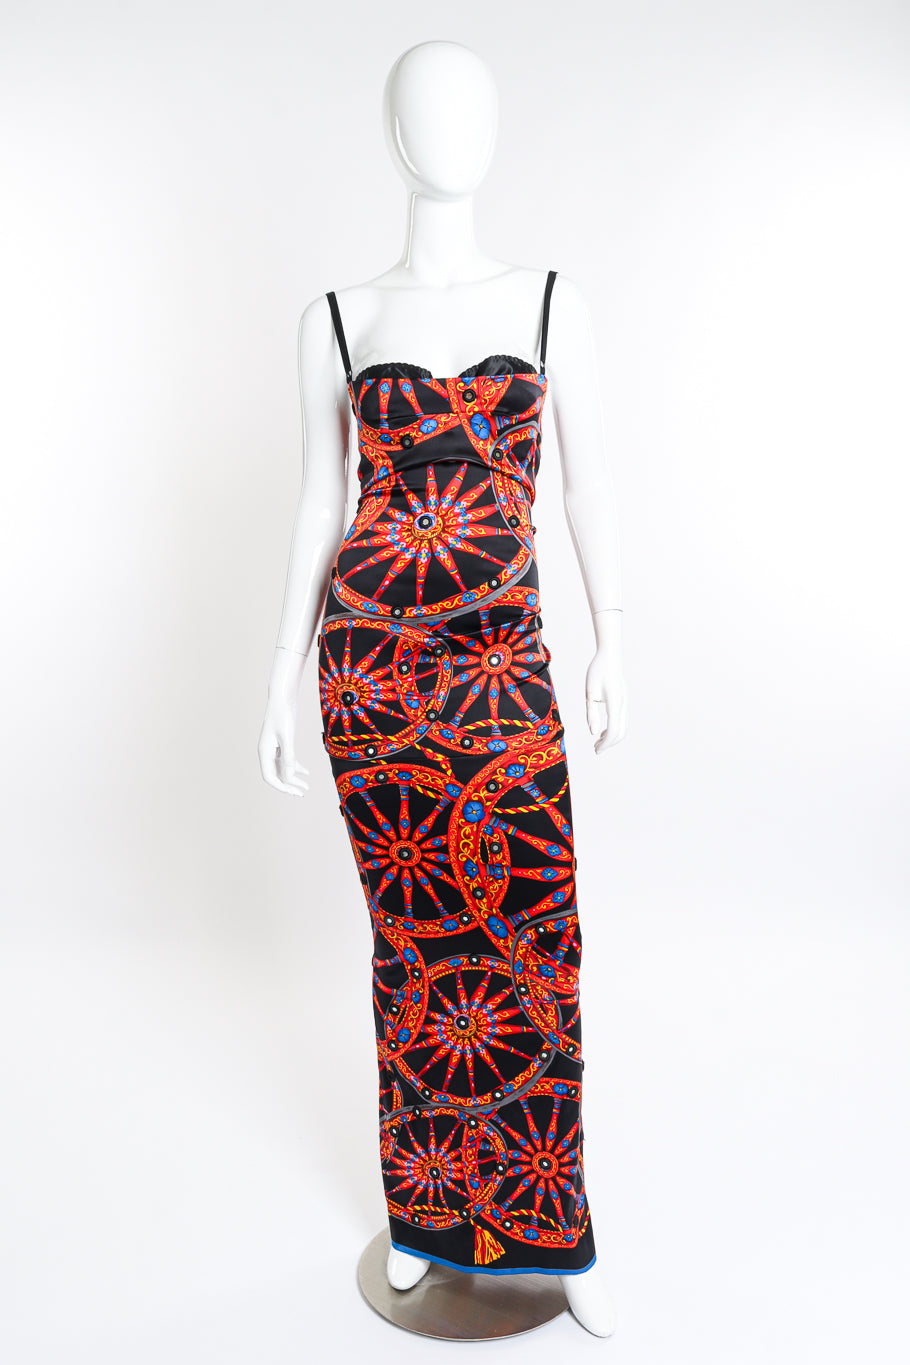 Dolce & Gabbana Wheel Mirror Silk Gown front on mannequin @recess la